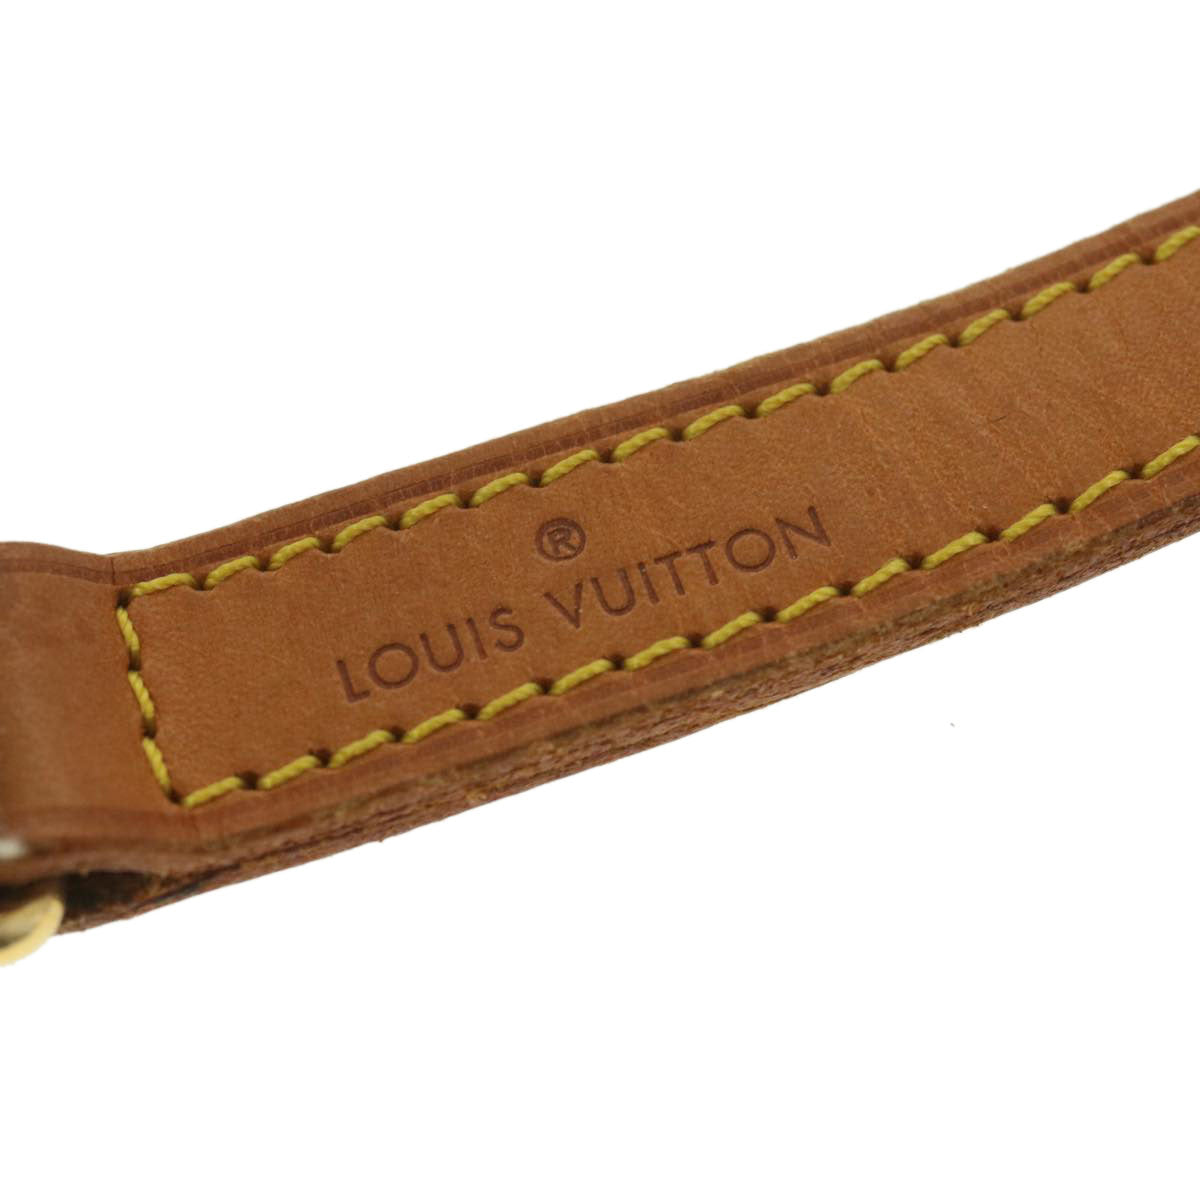 LOUIS VUITTON Shoulder Strap Leather 35.4"" Beige LV Auth ar9129